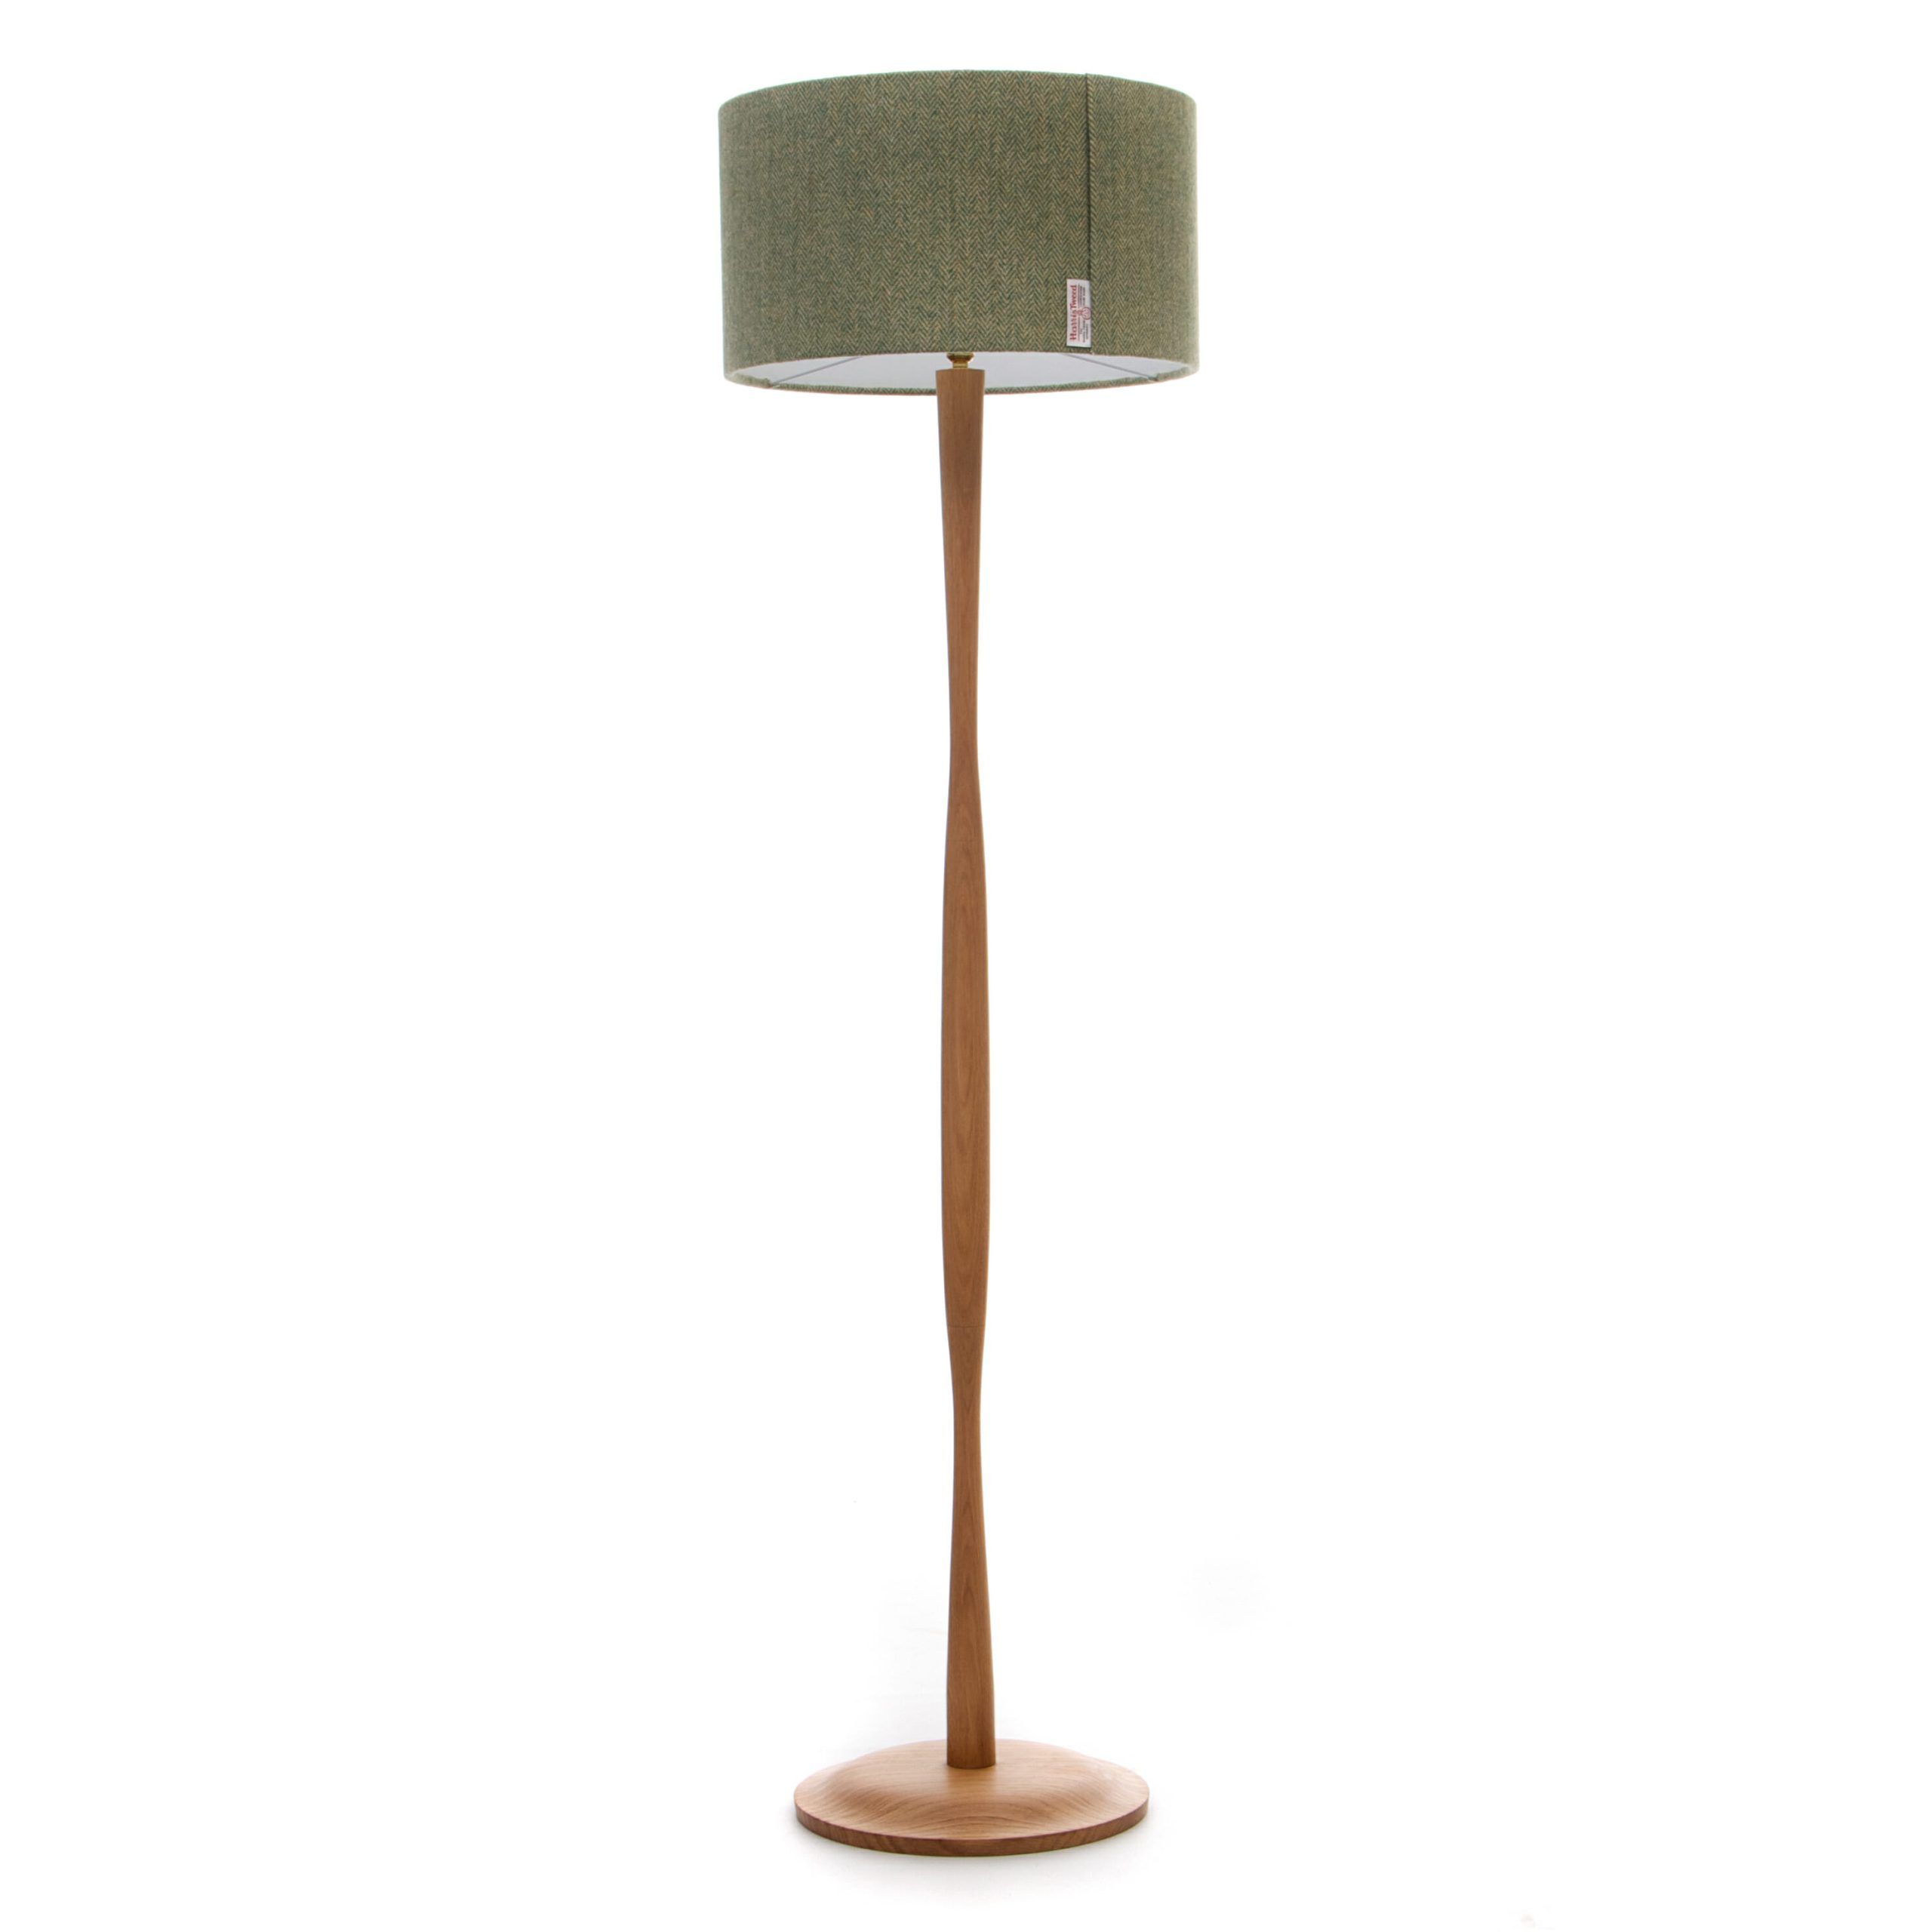 Modern Oak Floor Lamp | Wooden Floor Lamp Handmade In The Uk Intended For Oak Floor Lamps (Photo 4 of 15)